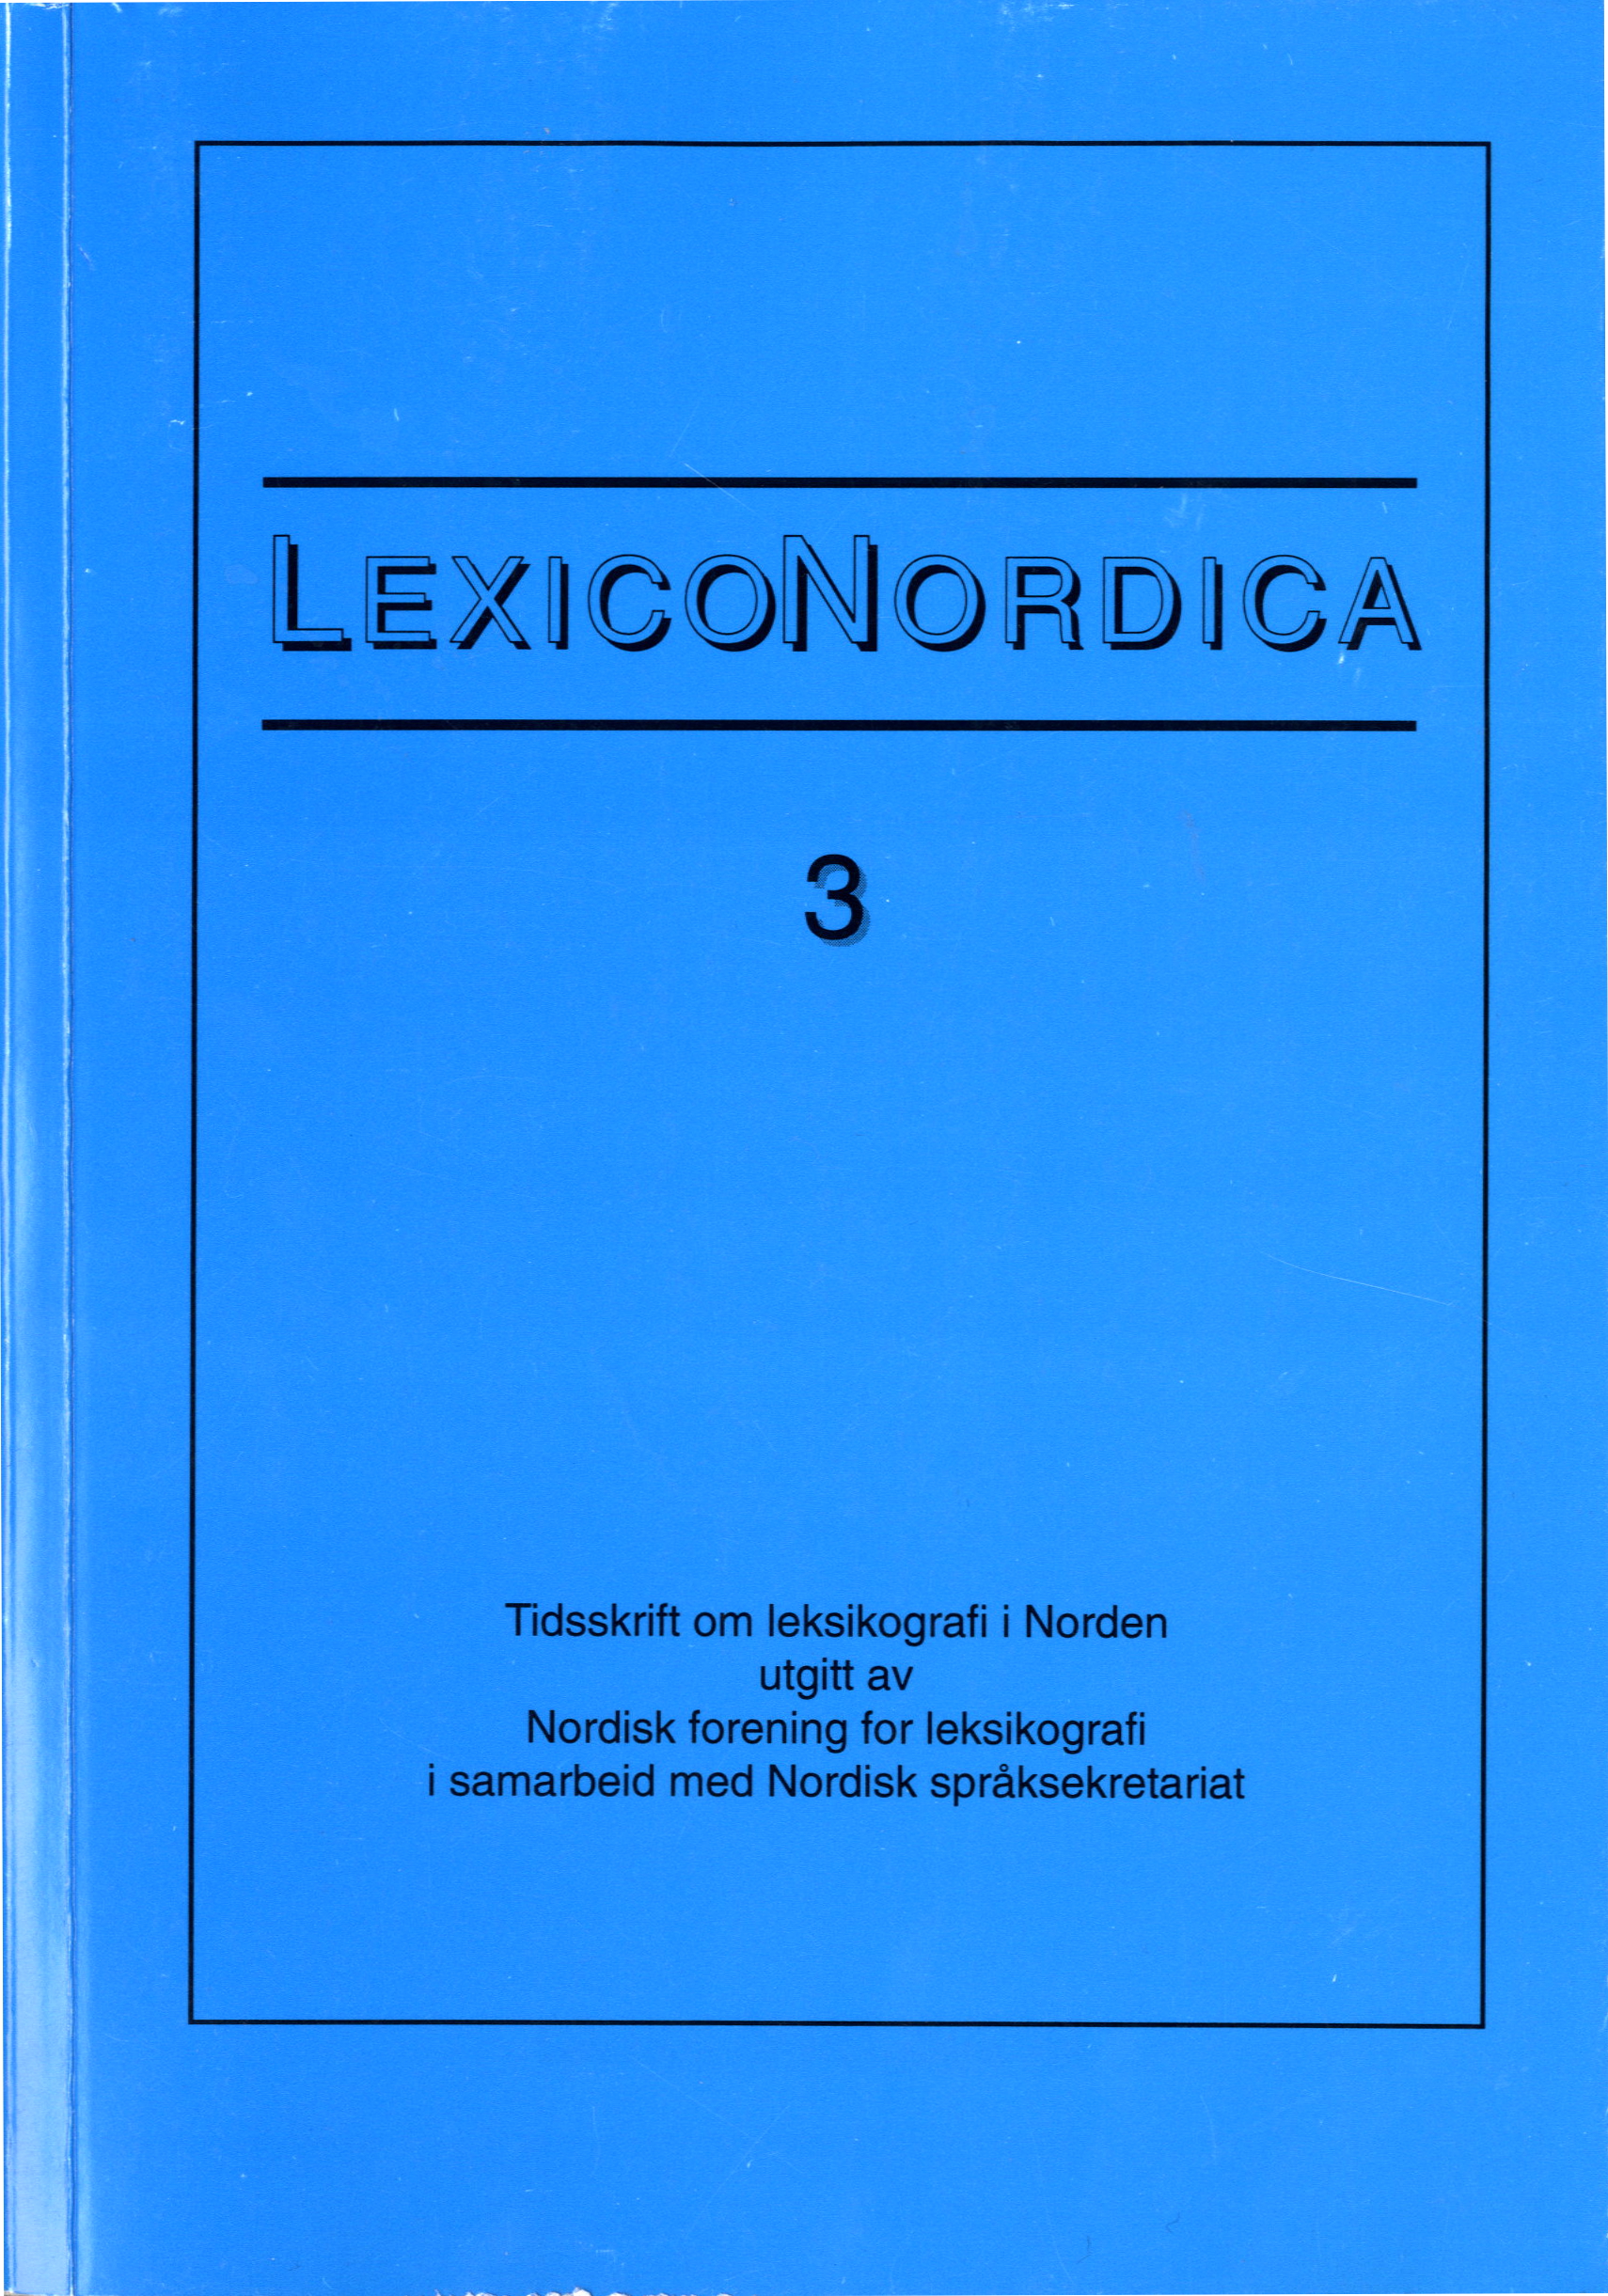 					Se Nr. 3 (1996): Korpusbasert leksikografi i Norden
				